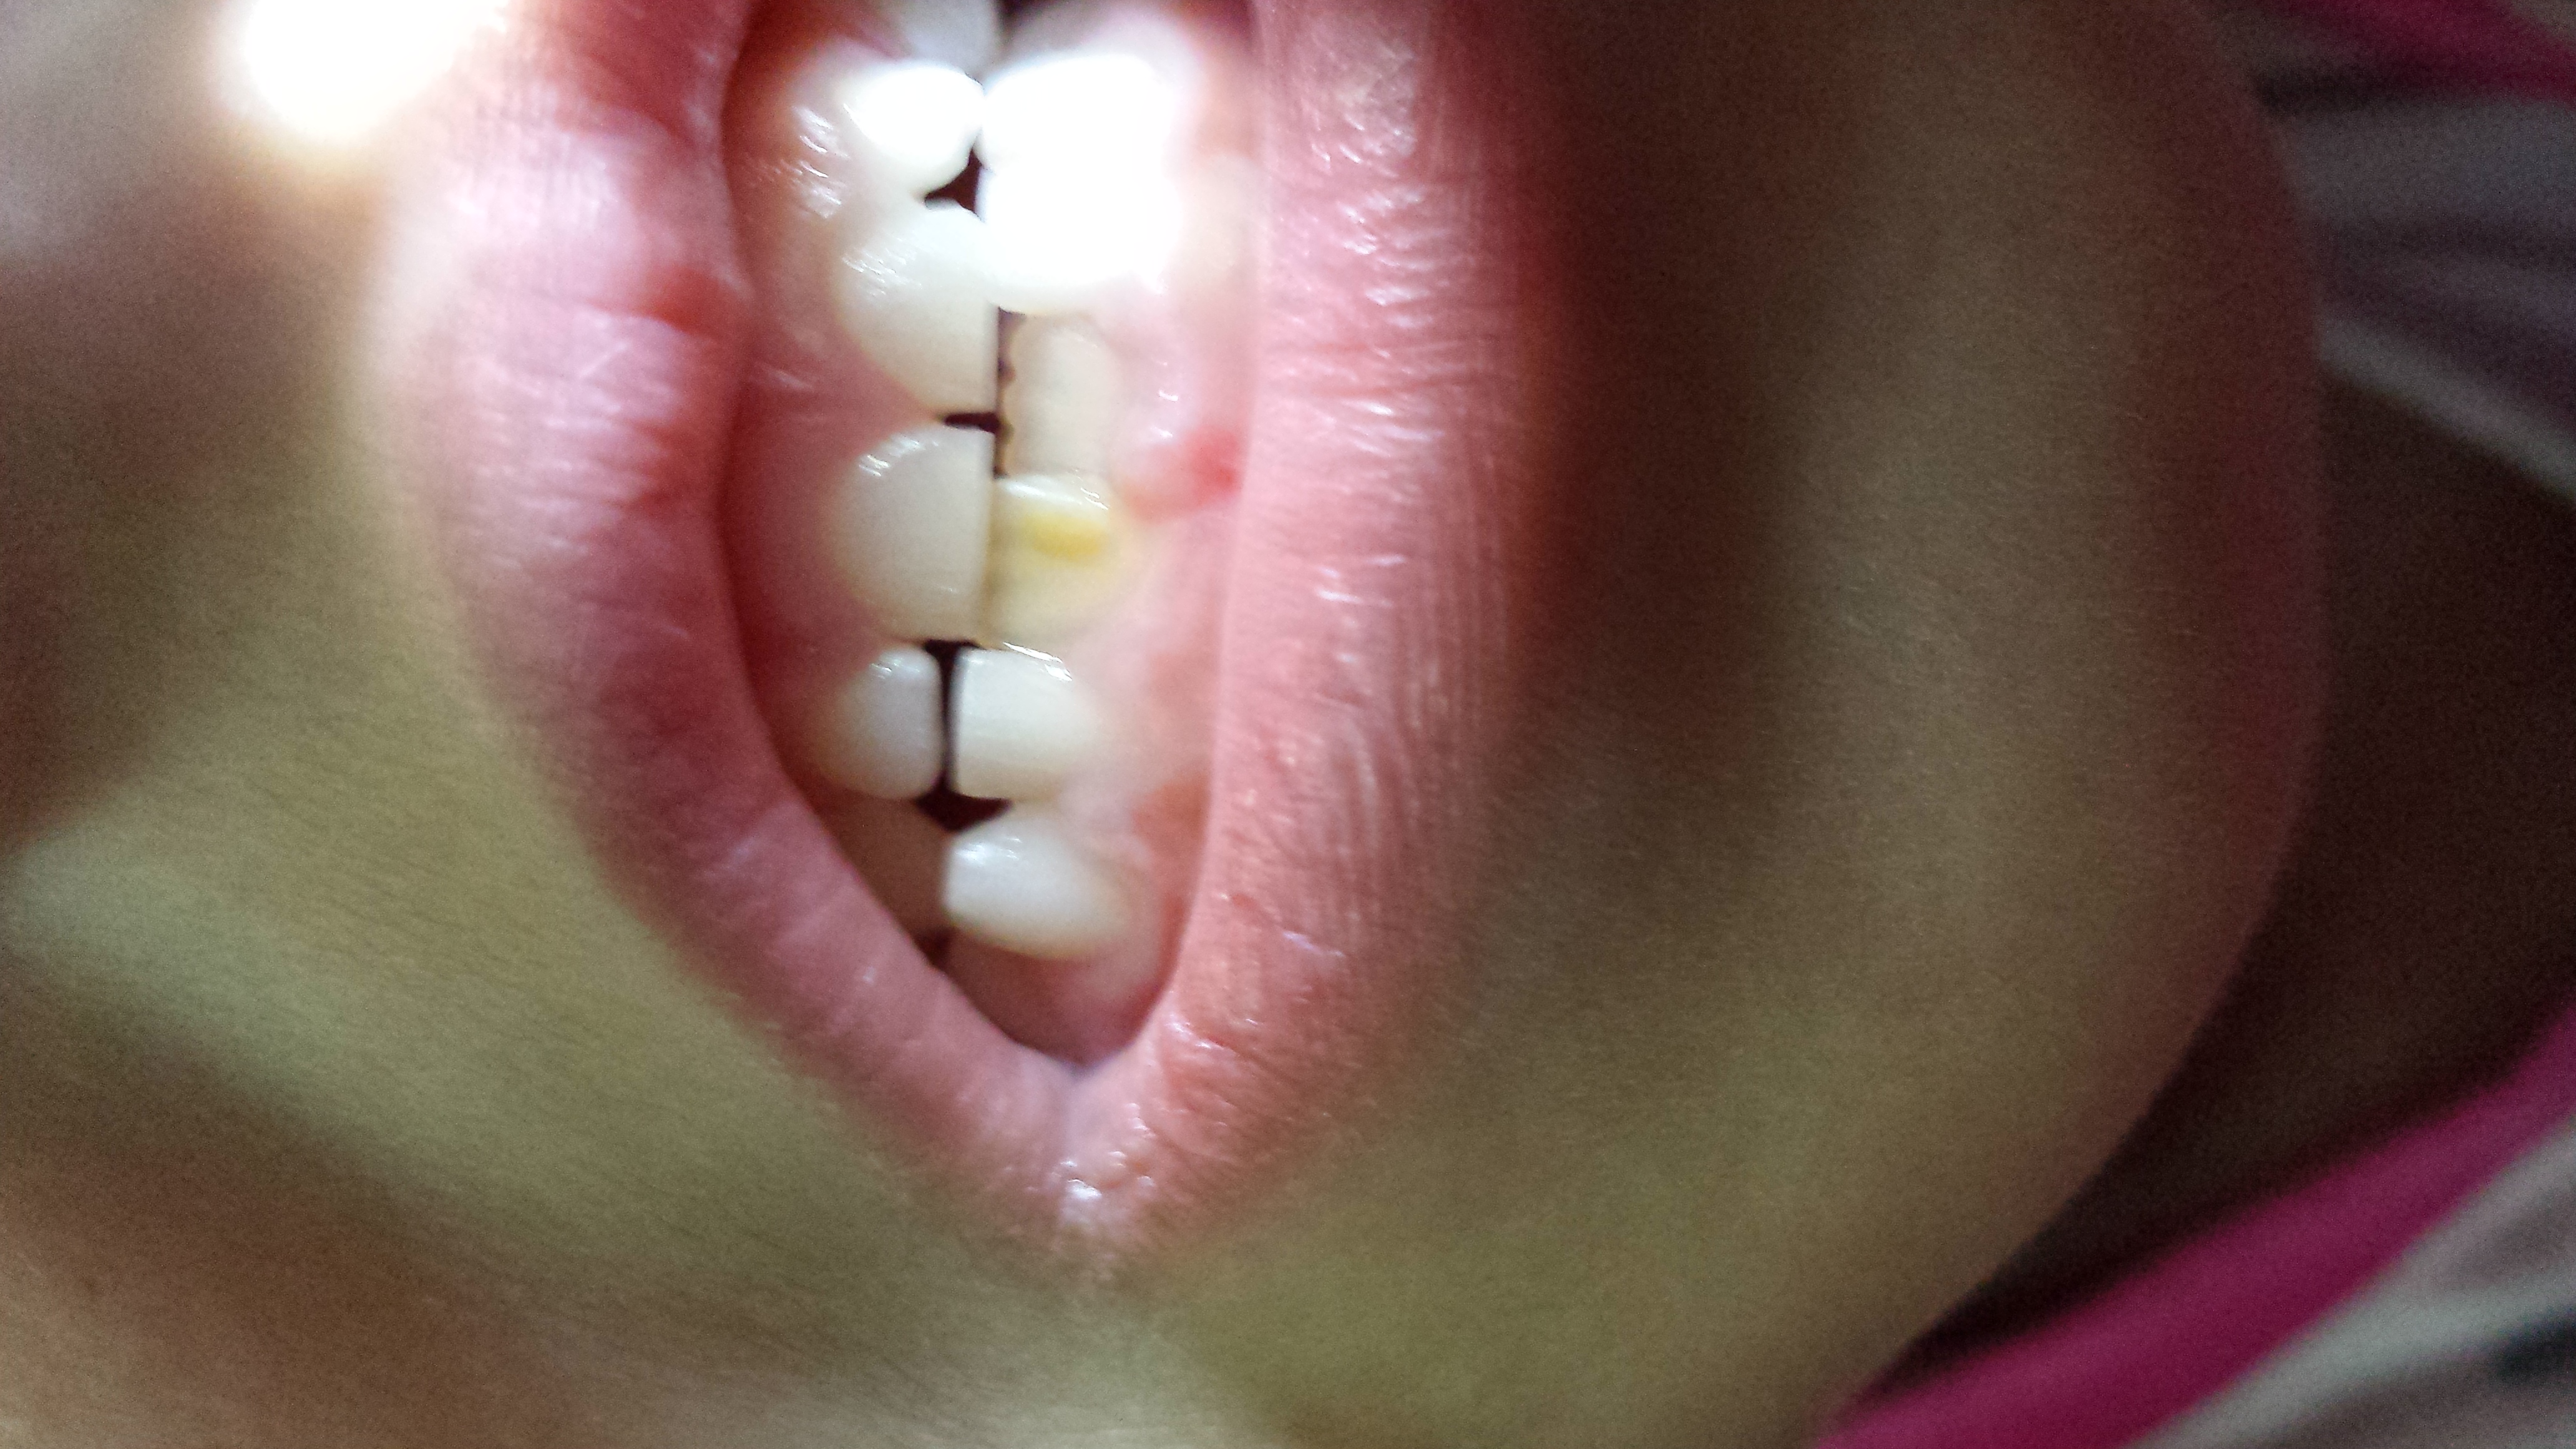 Mia figlia di 5 anni ha una macchia giallastra sul dente